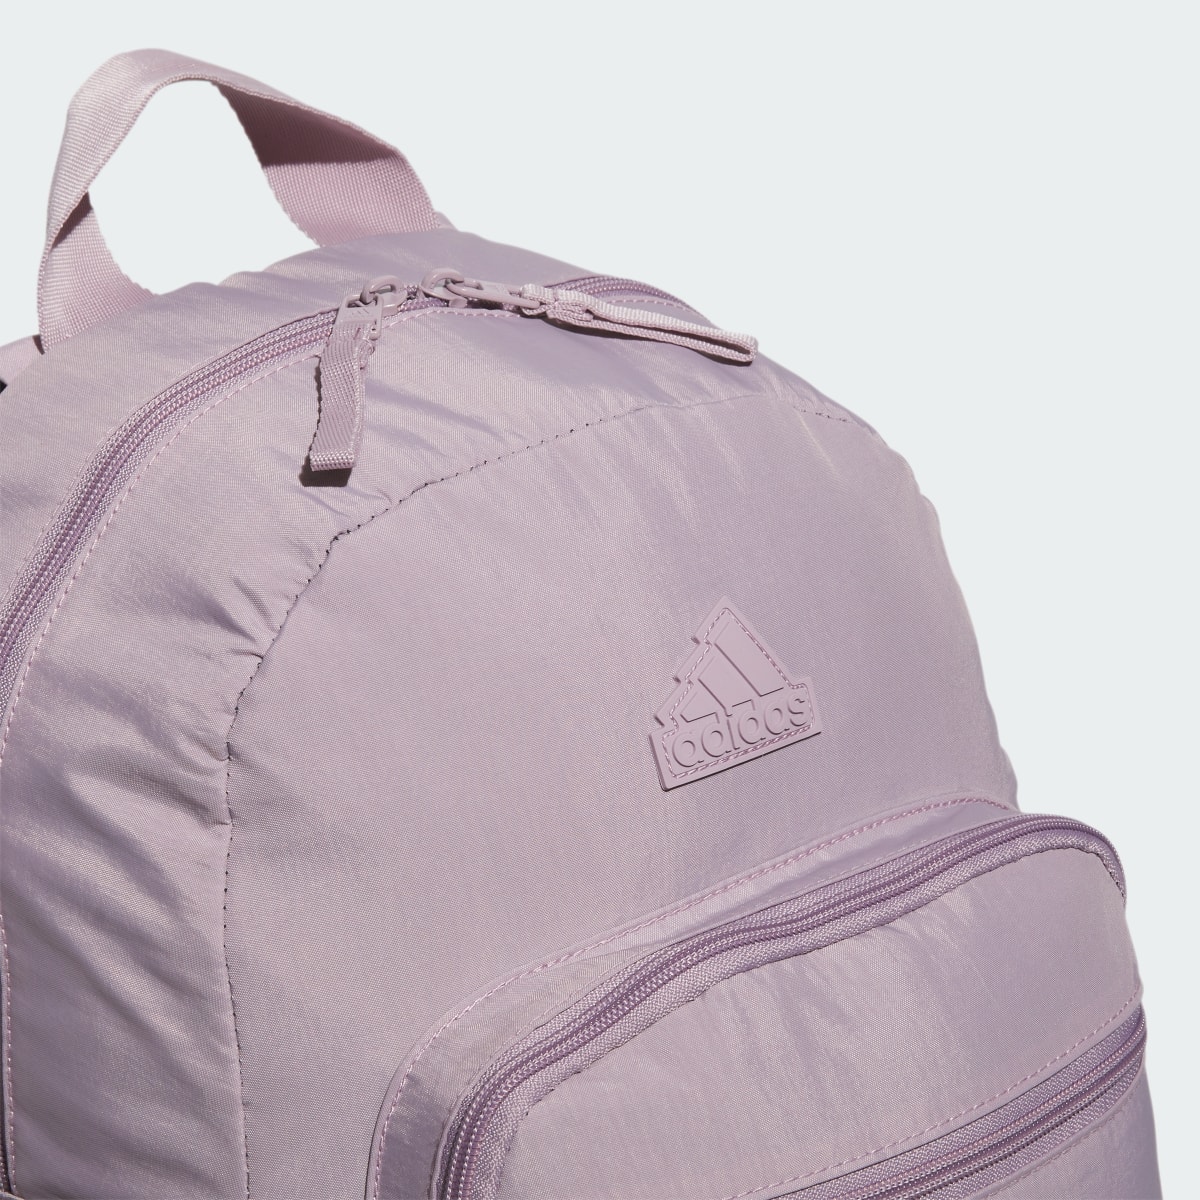 Adidas Weekender Backpack. 5